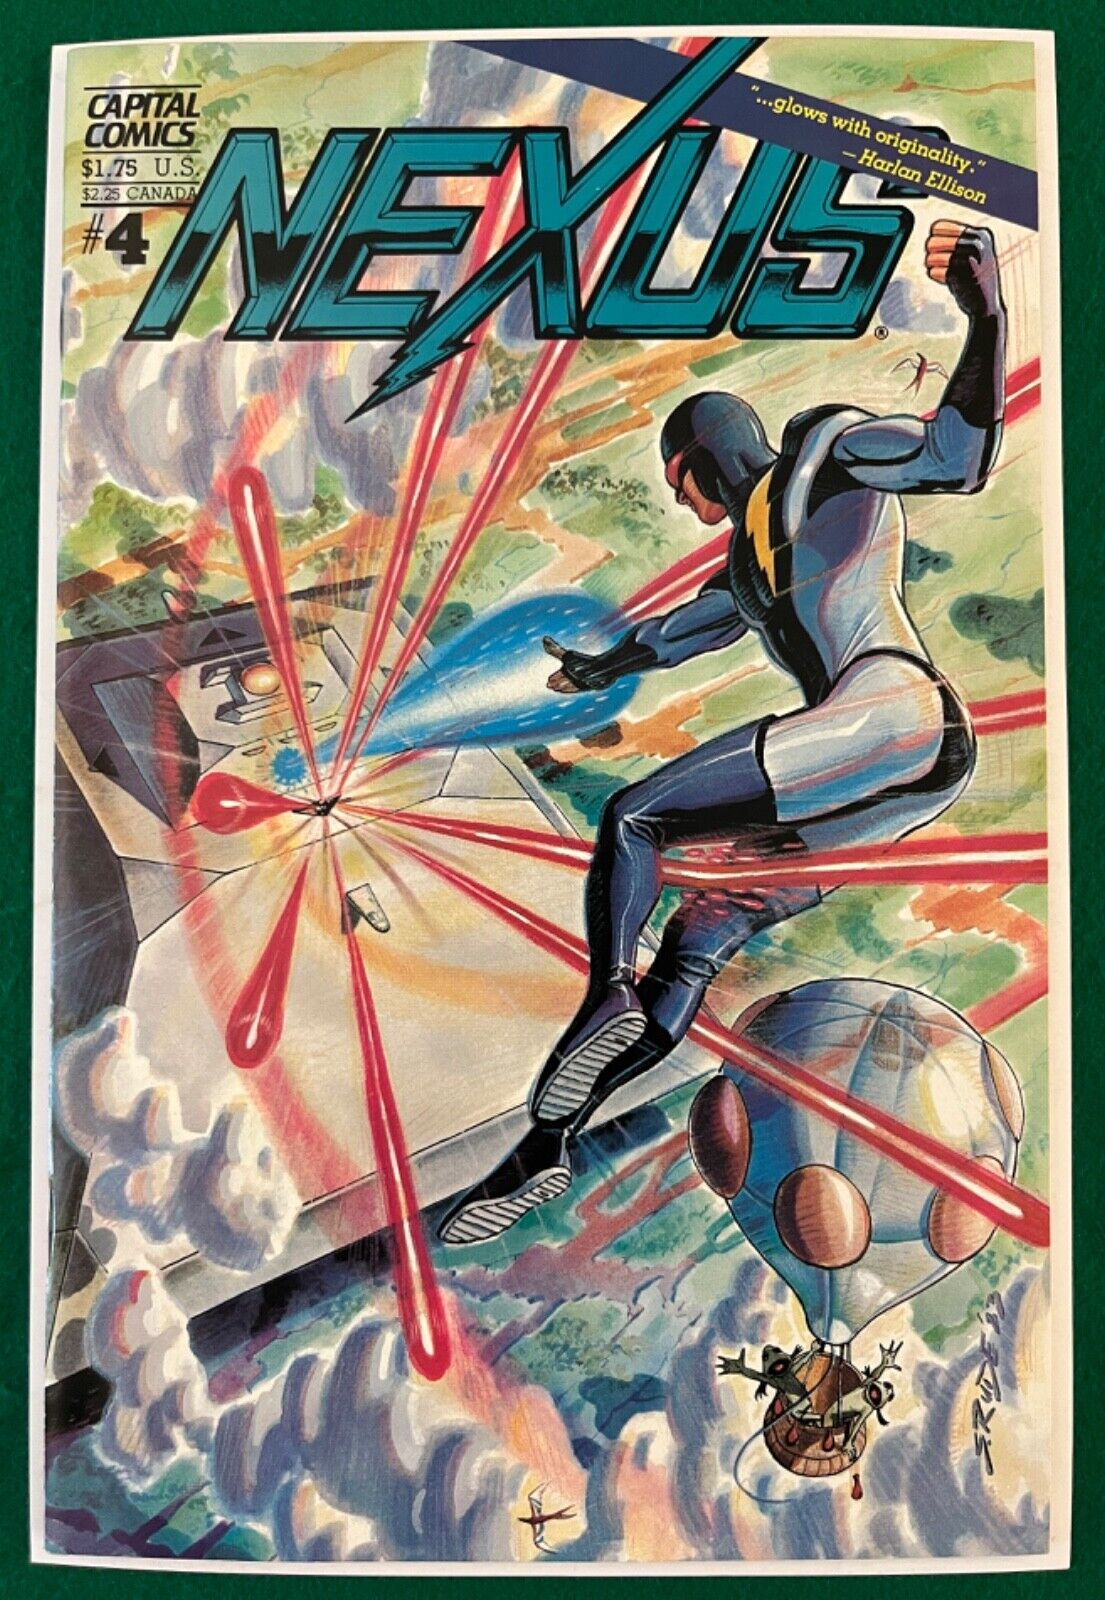 Capital Comics Nexus Vol. II #4 November 1983 (VF-NM)